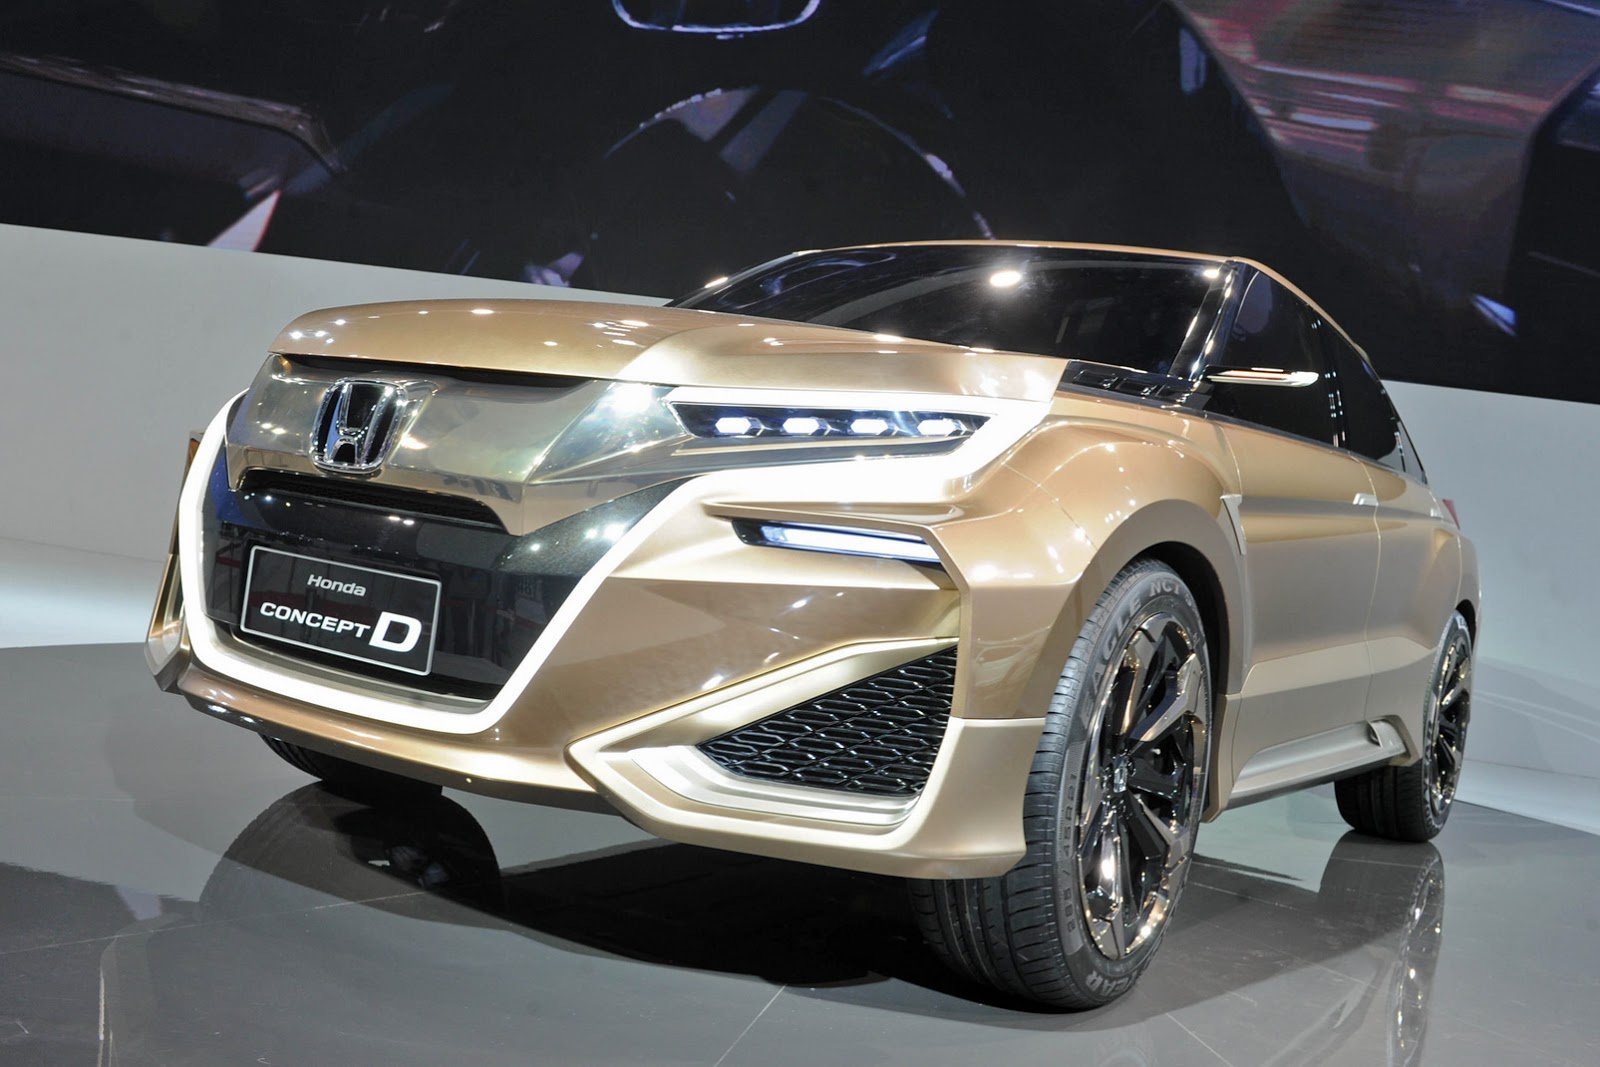 2015, Cars, Concept, Concept d, Honda Wallpaper